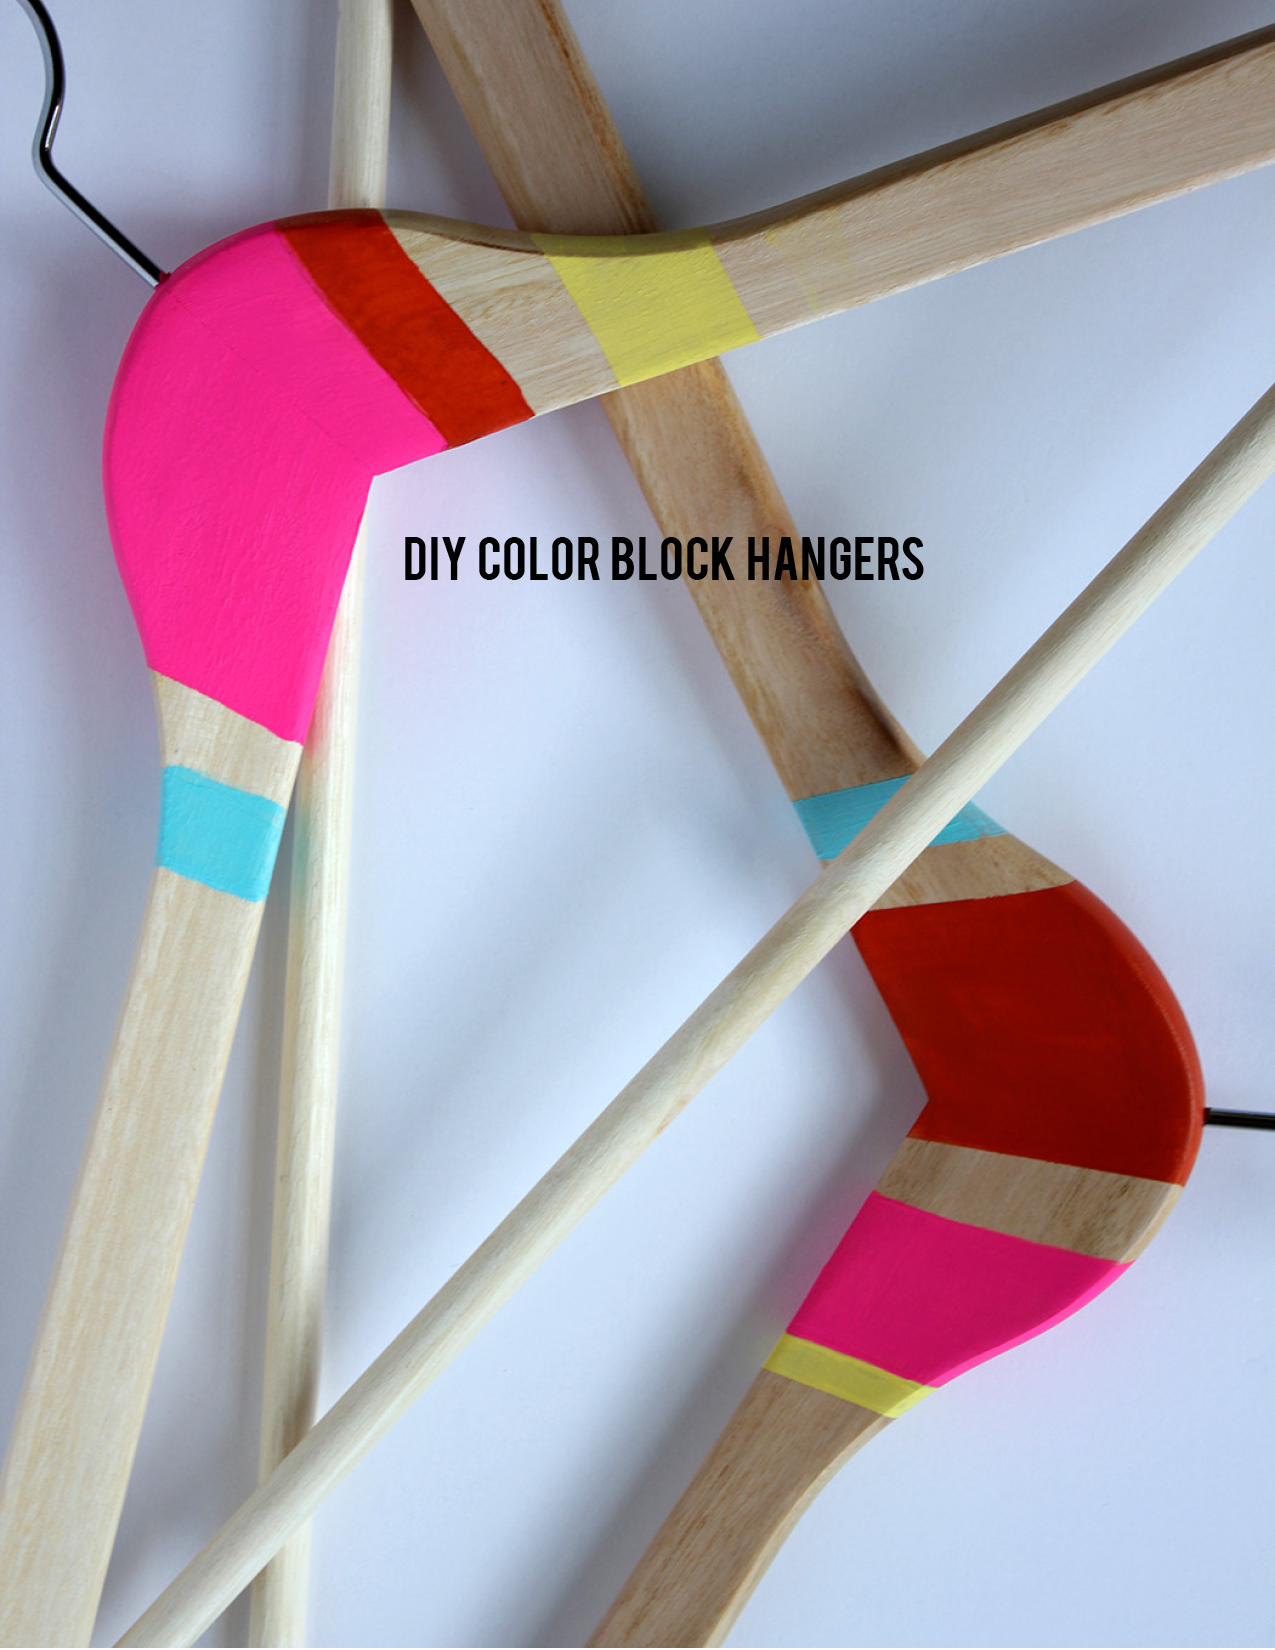 DIY Color Block Hangers